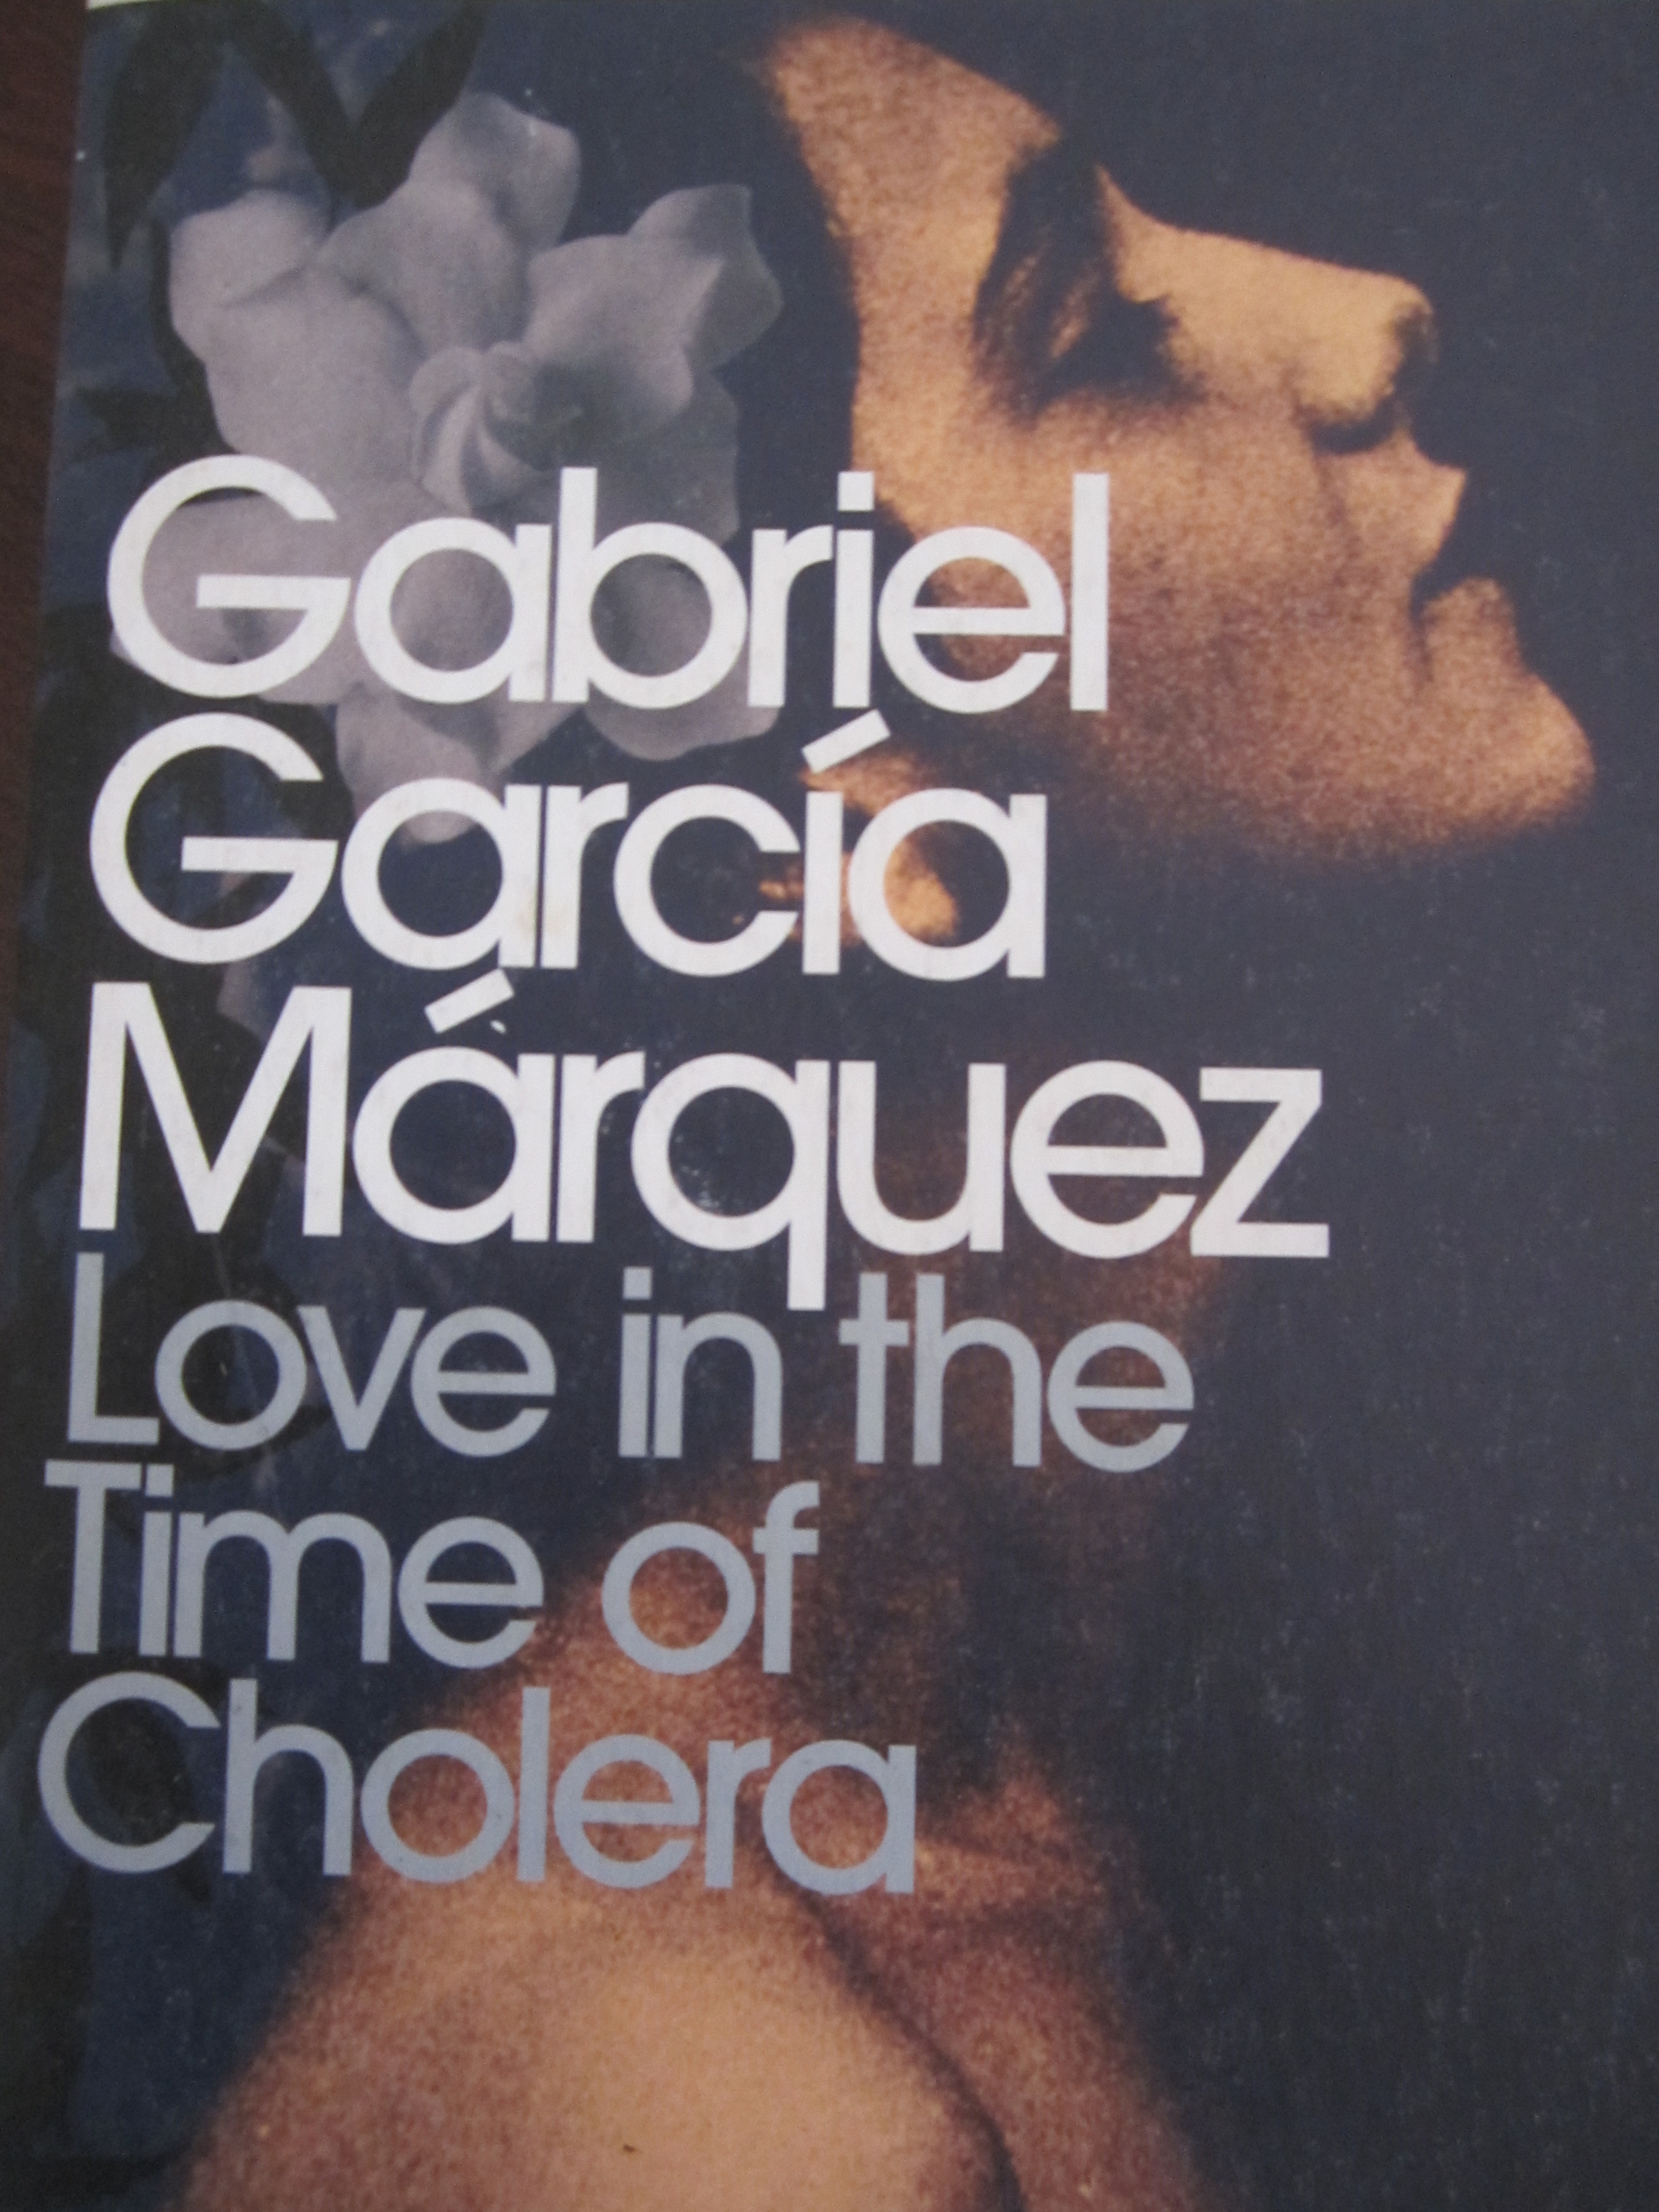 Love in the Time of Cholera 1985 by Gabriel Garc­a Márquez CG FEWSTON